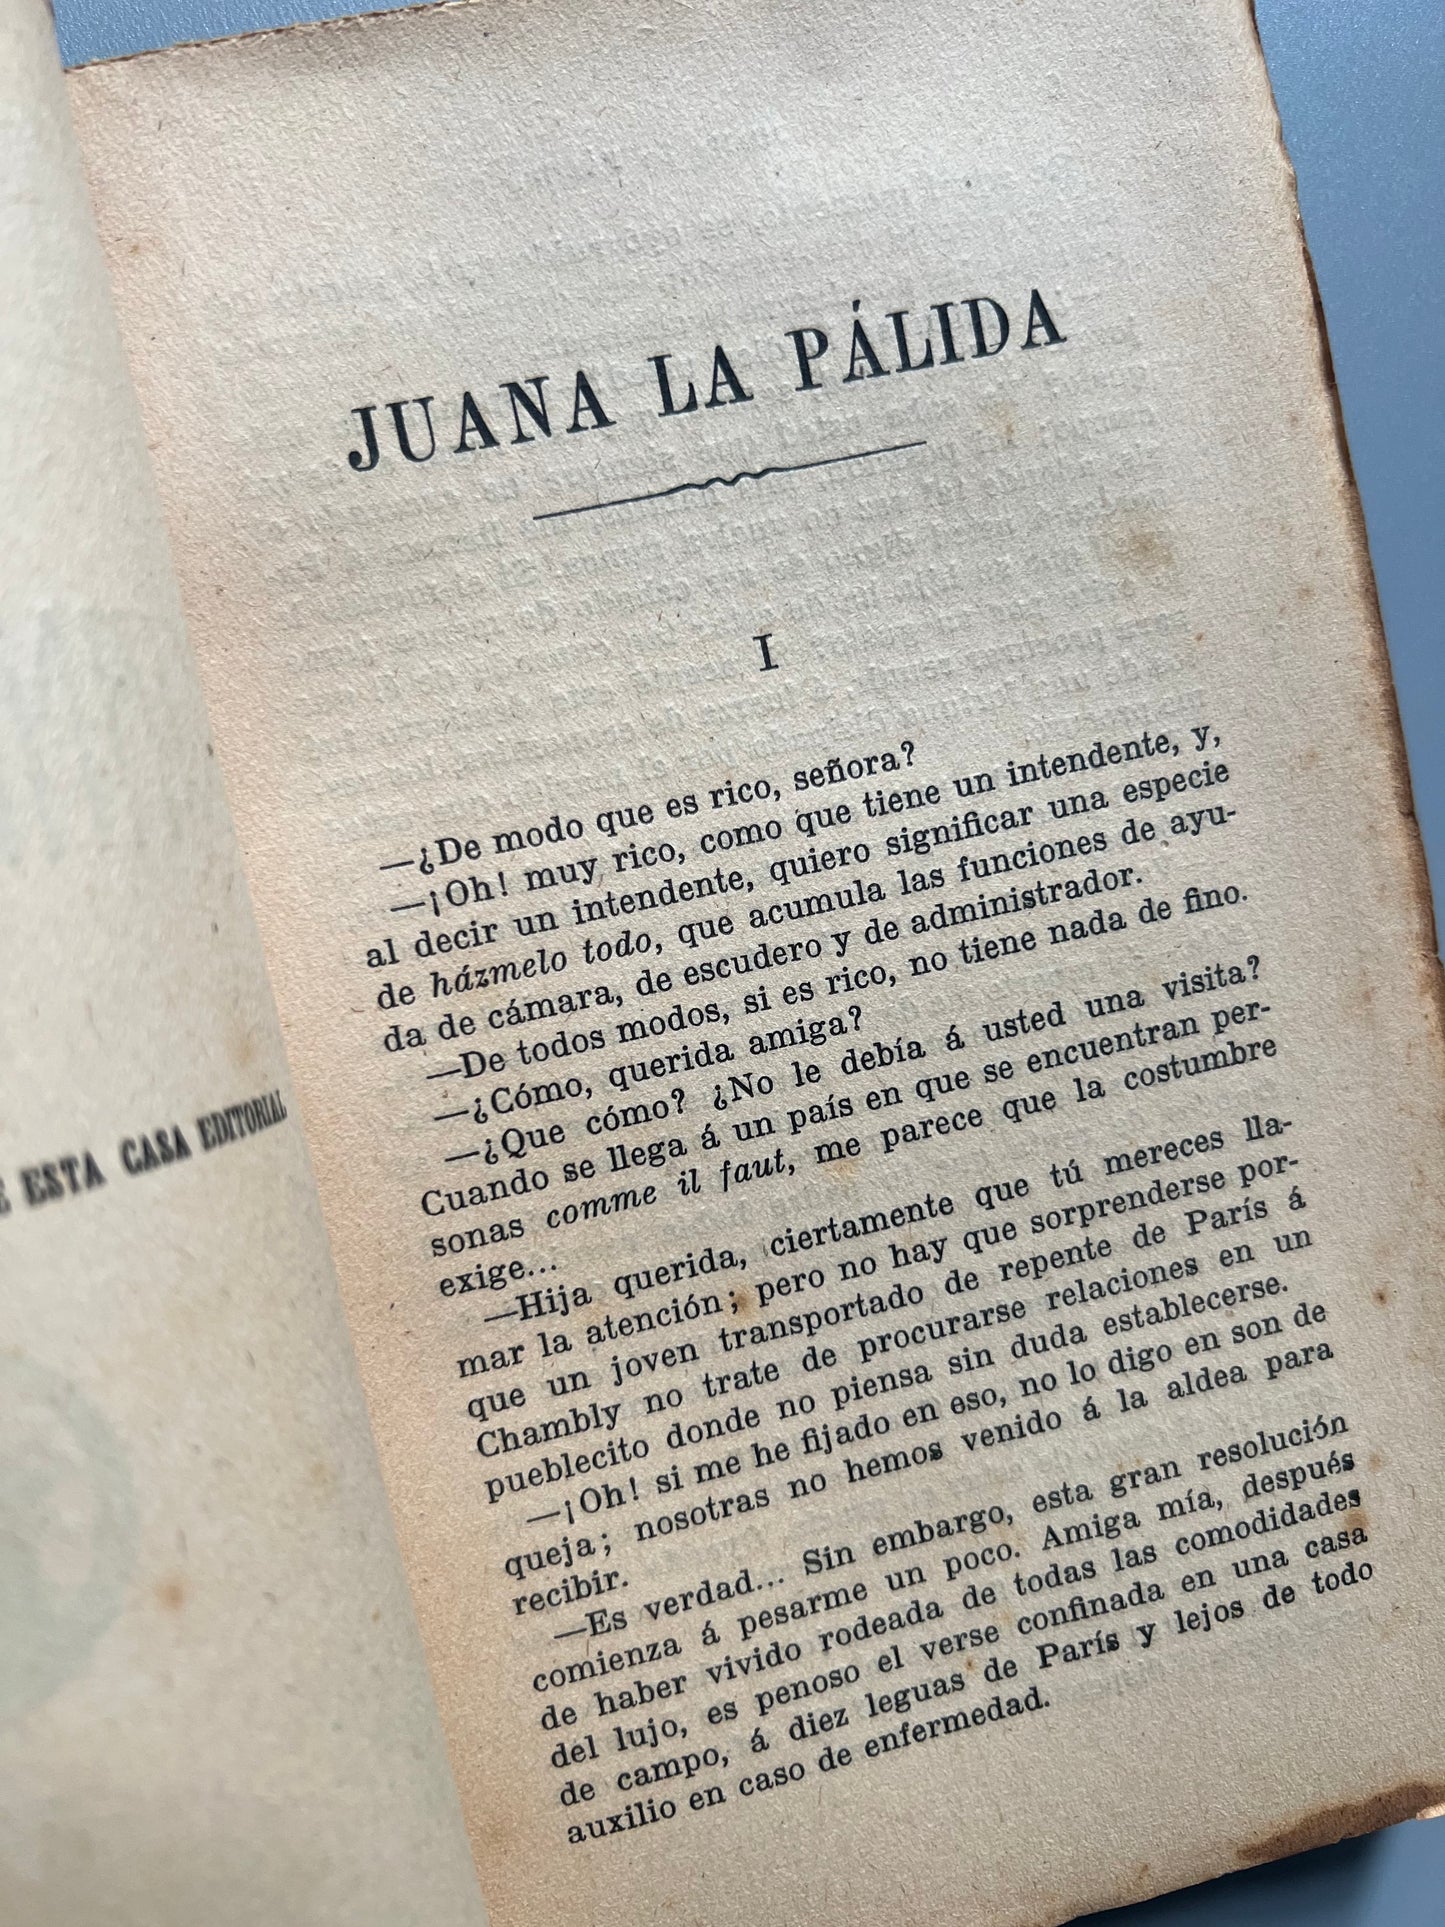 Juana la pálida, Honoré de Balzac - Imprenta de la viuda de Luis Tasso, ca. 1930